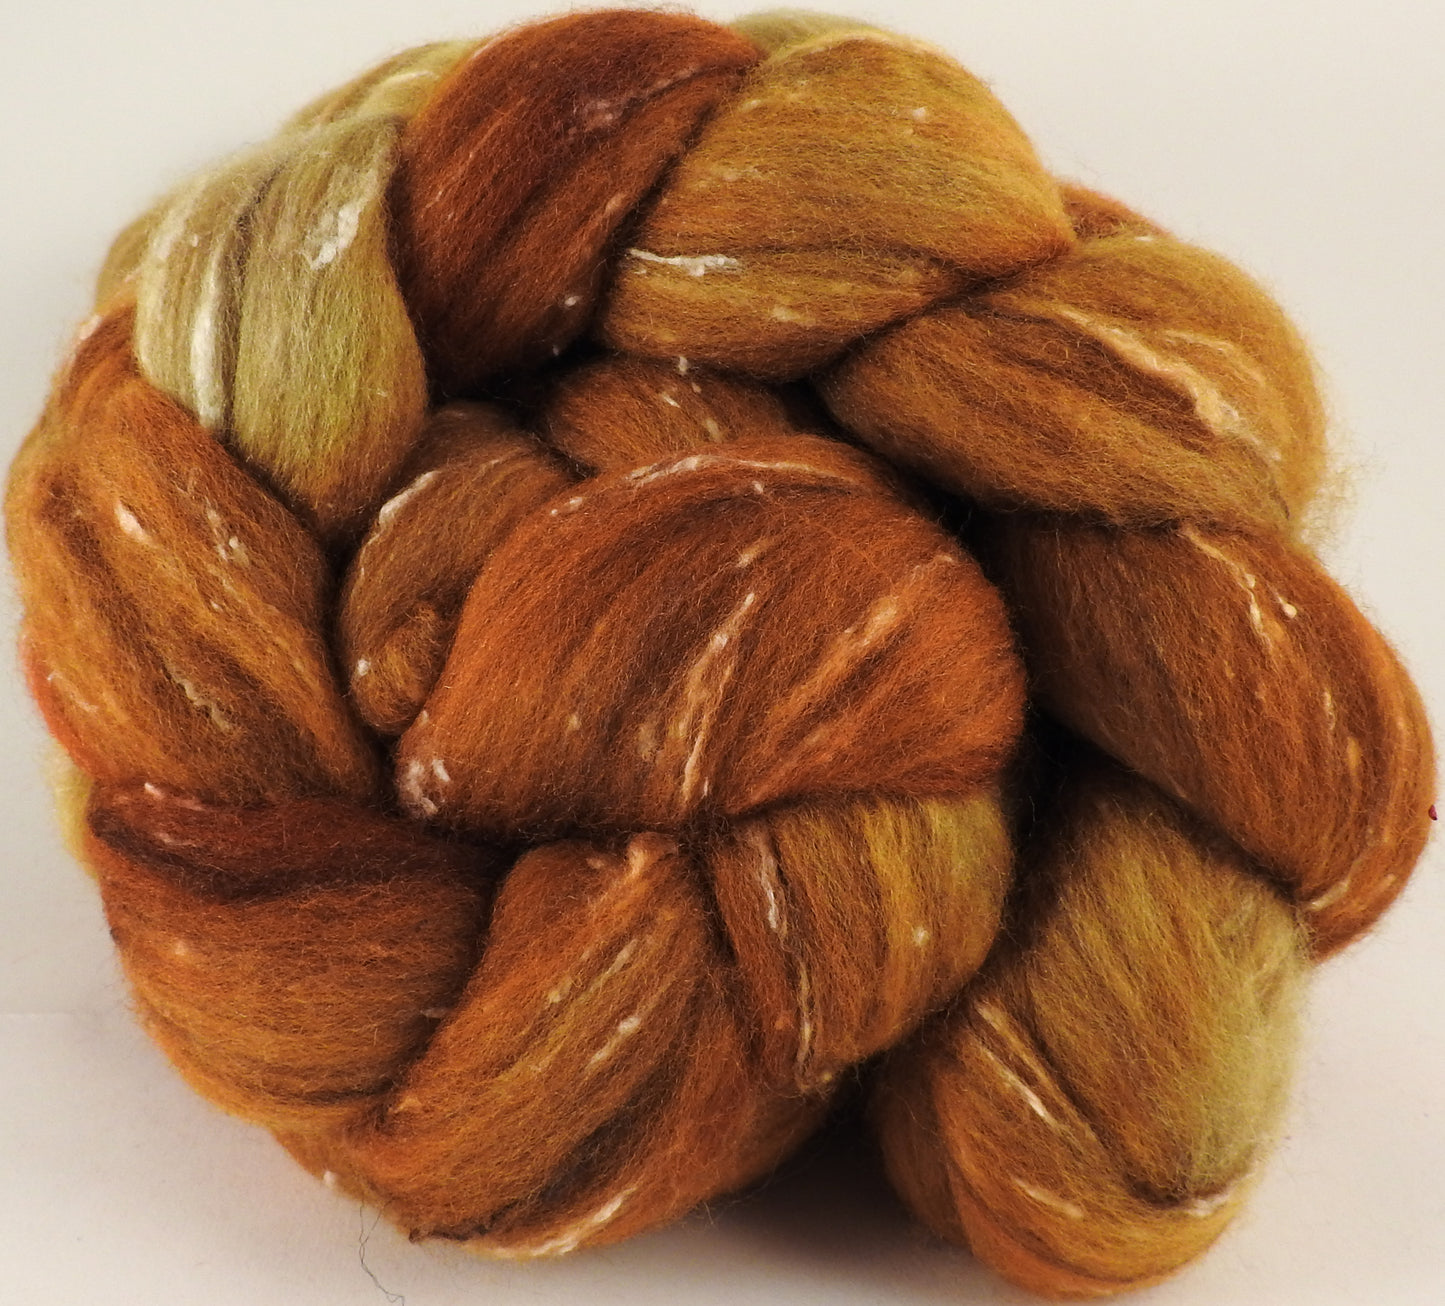 Batt in a Braid #42- Honeycomb -(5.3 oz)  Polwarth/ Tweed Blend / Peduncle&Tussah Silk( 50/25/25) - Inglenook Fibers